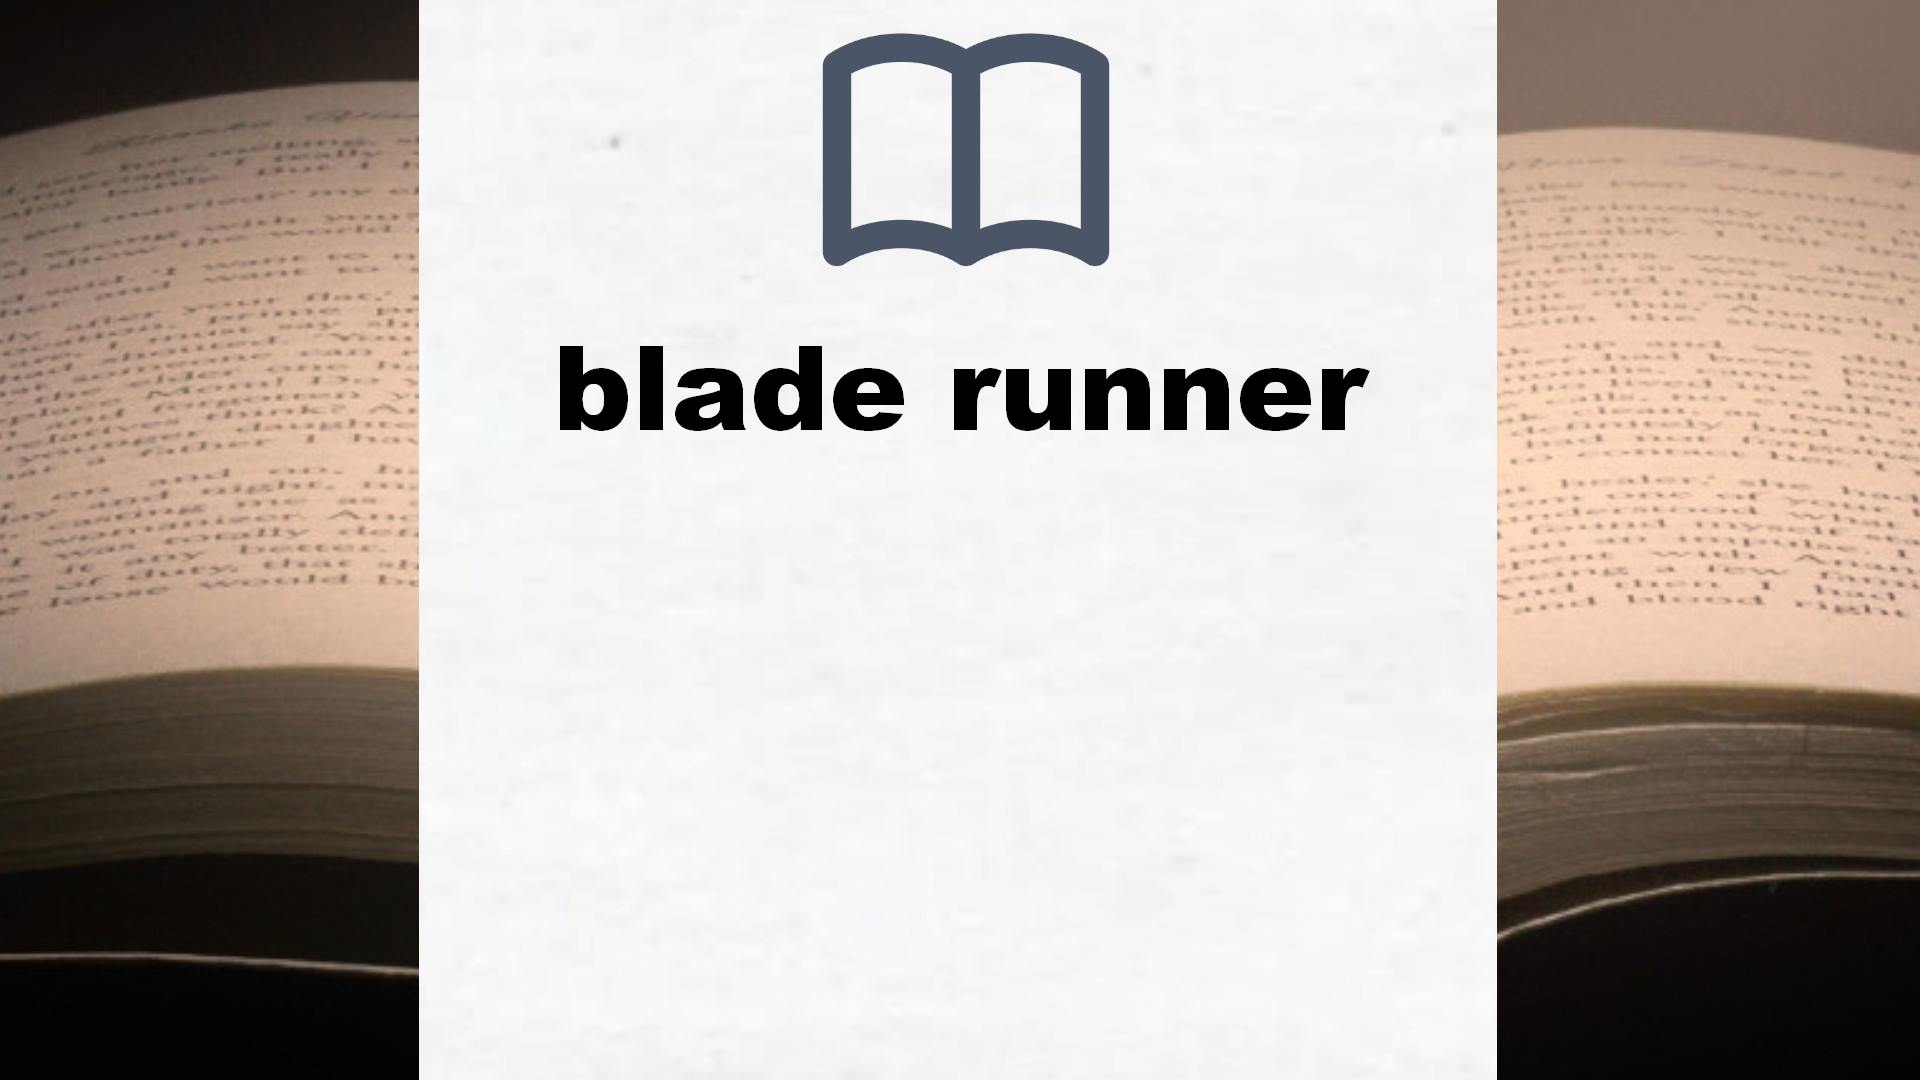 Libros sobre blade runner